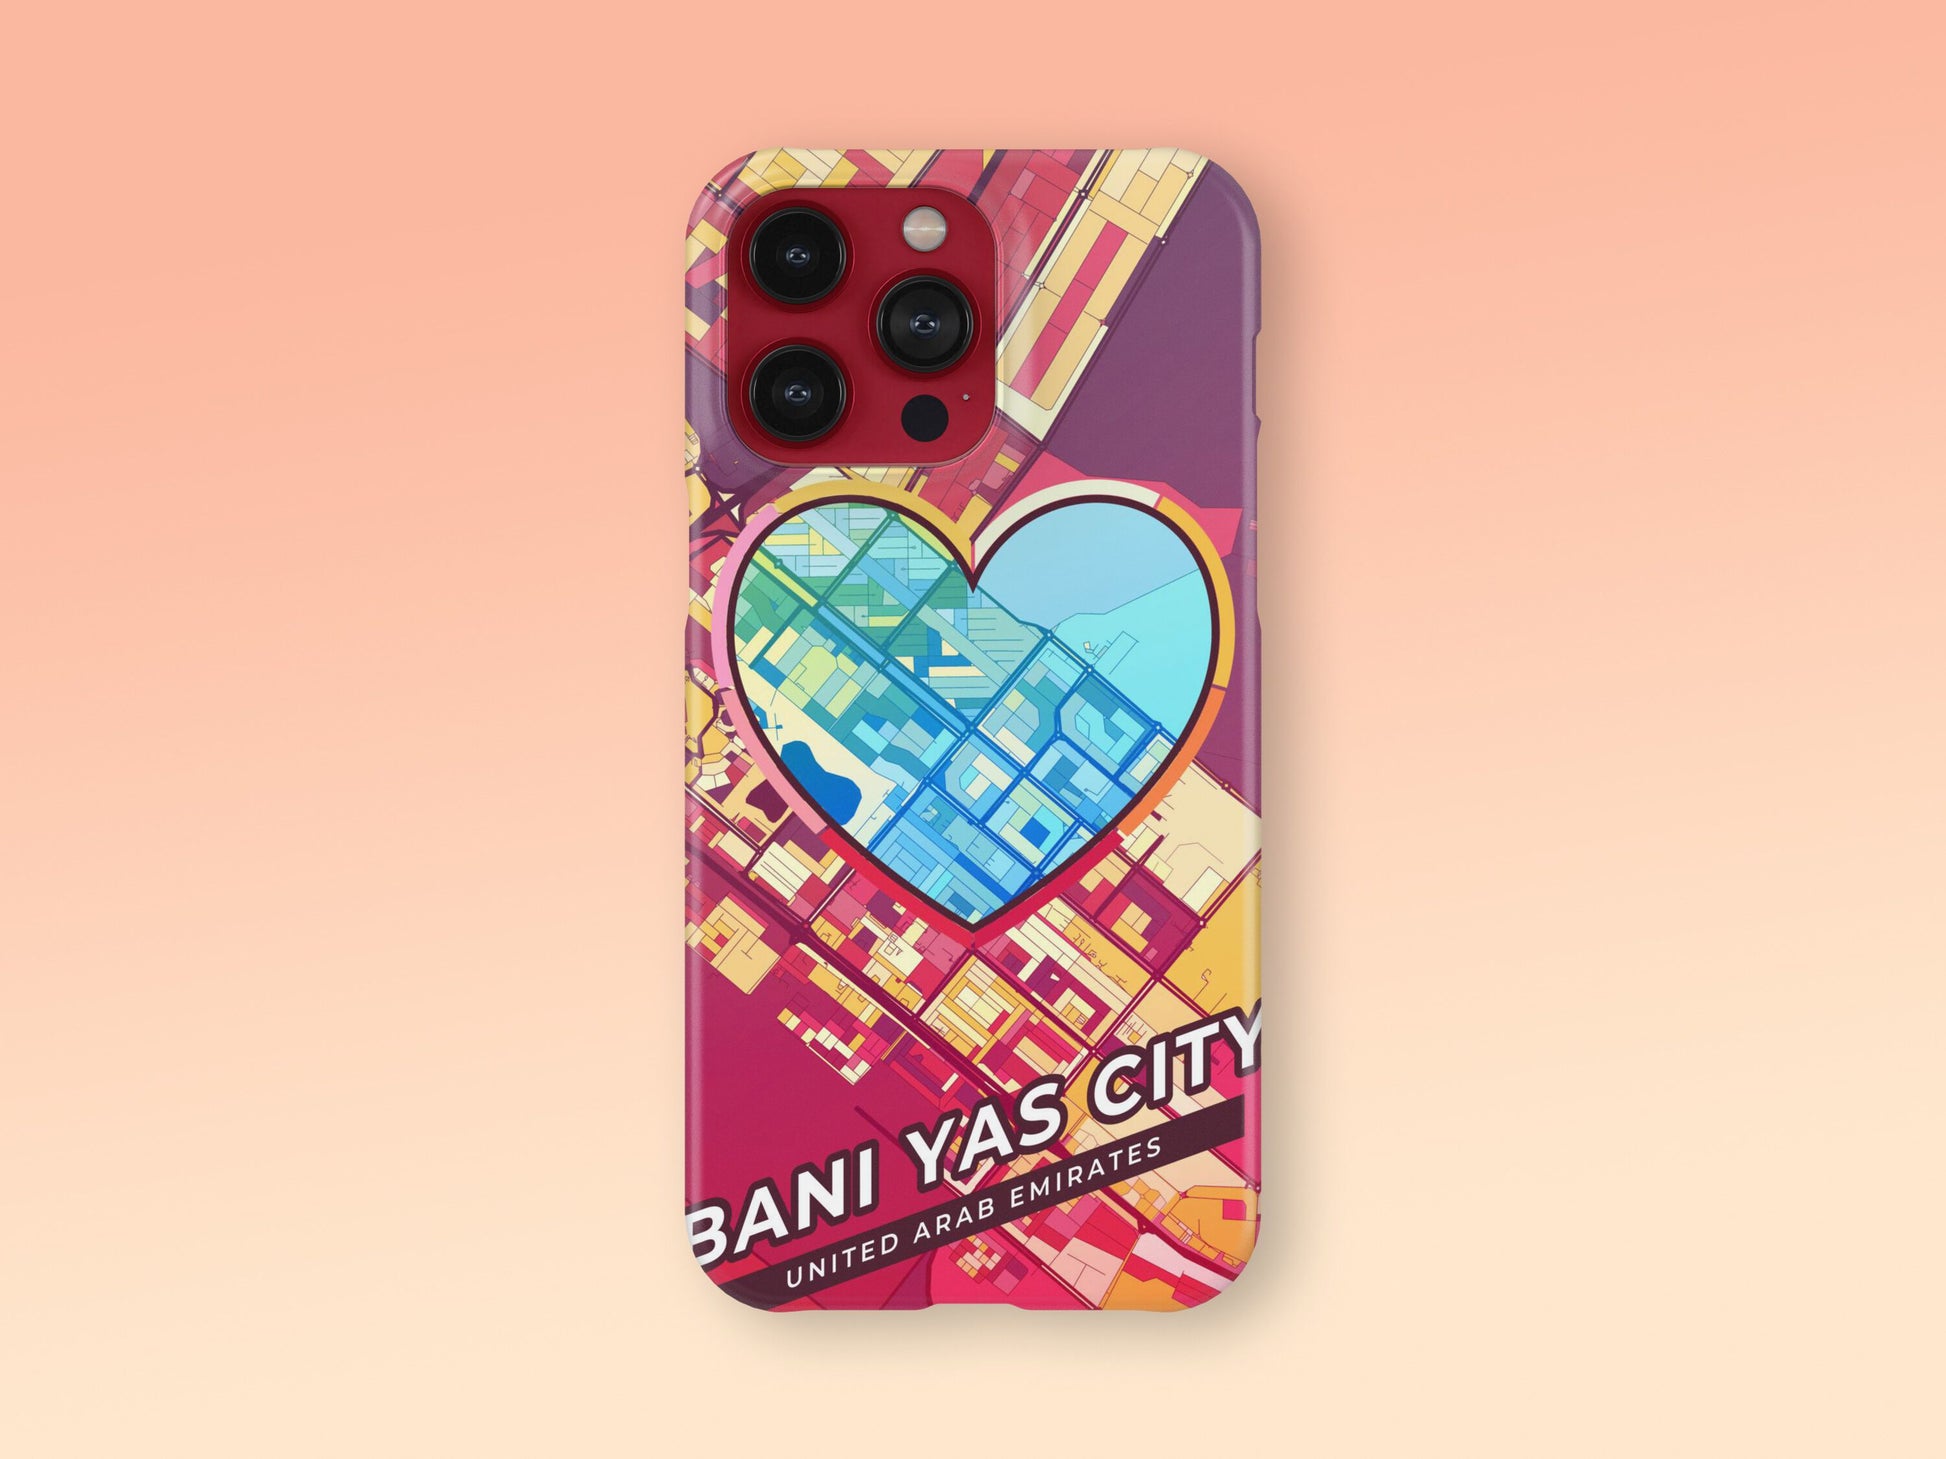 Bani Yas City United Arab Emirates slim phone case with colorful icon. Birthday, wedding or housewarming gift. Couple match cases. 2